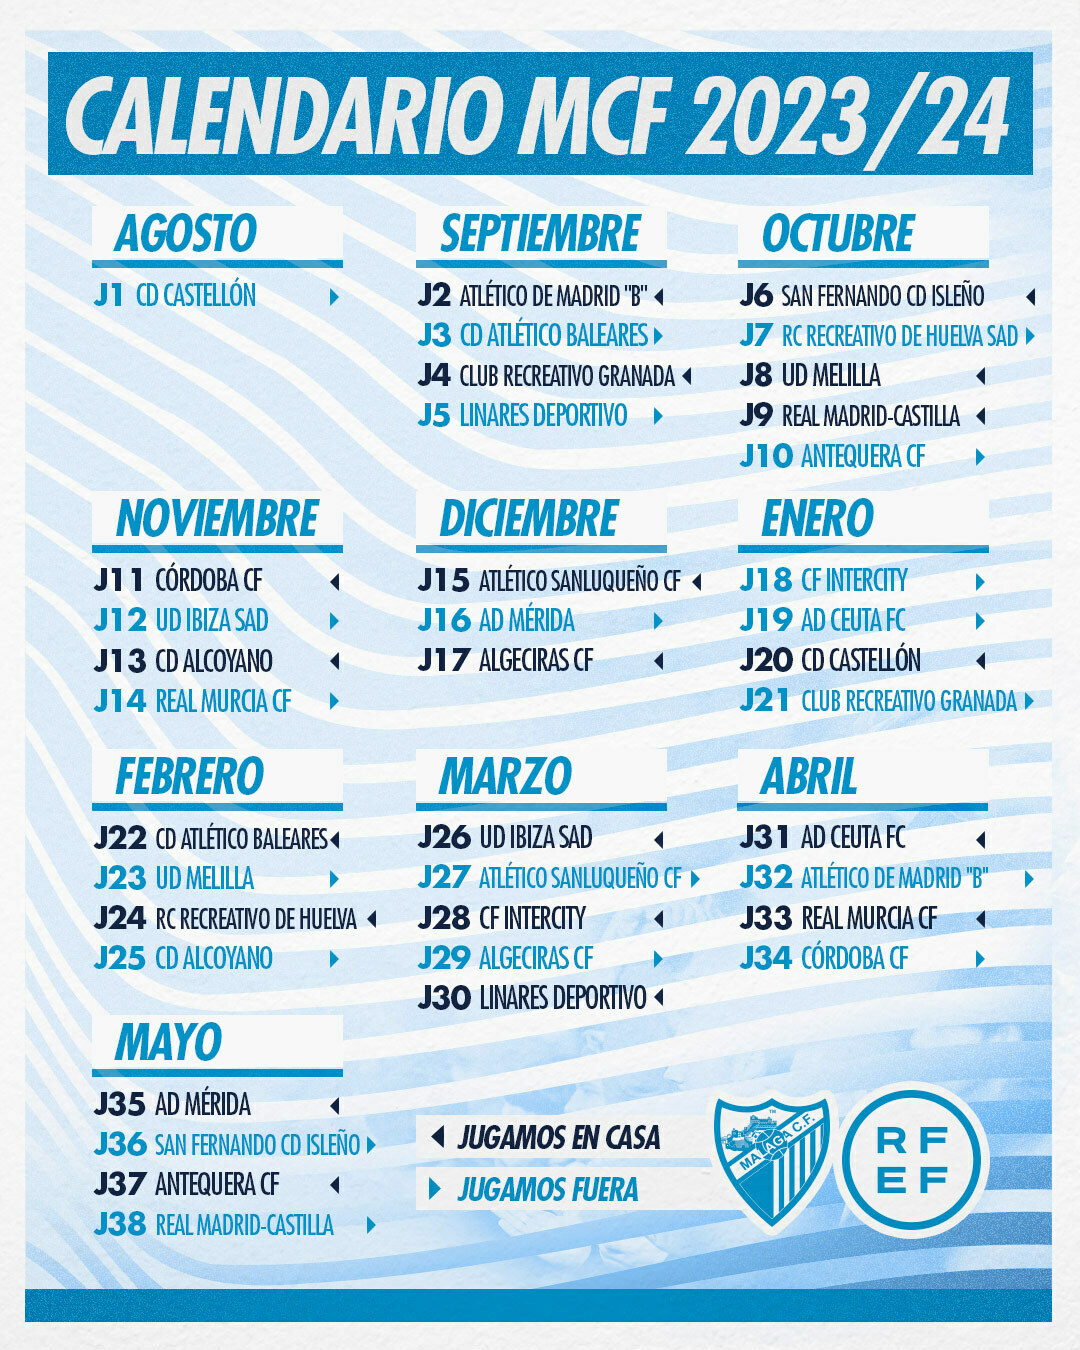 Calendario del málaga club de fútbol